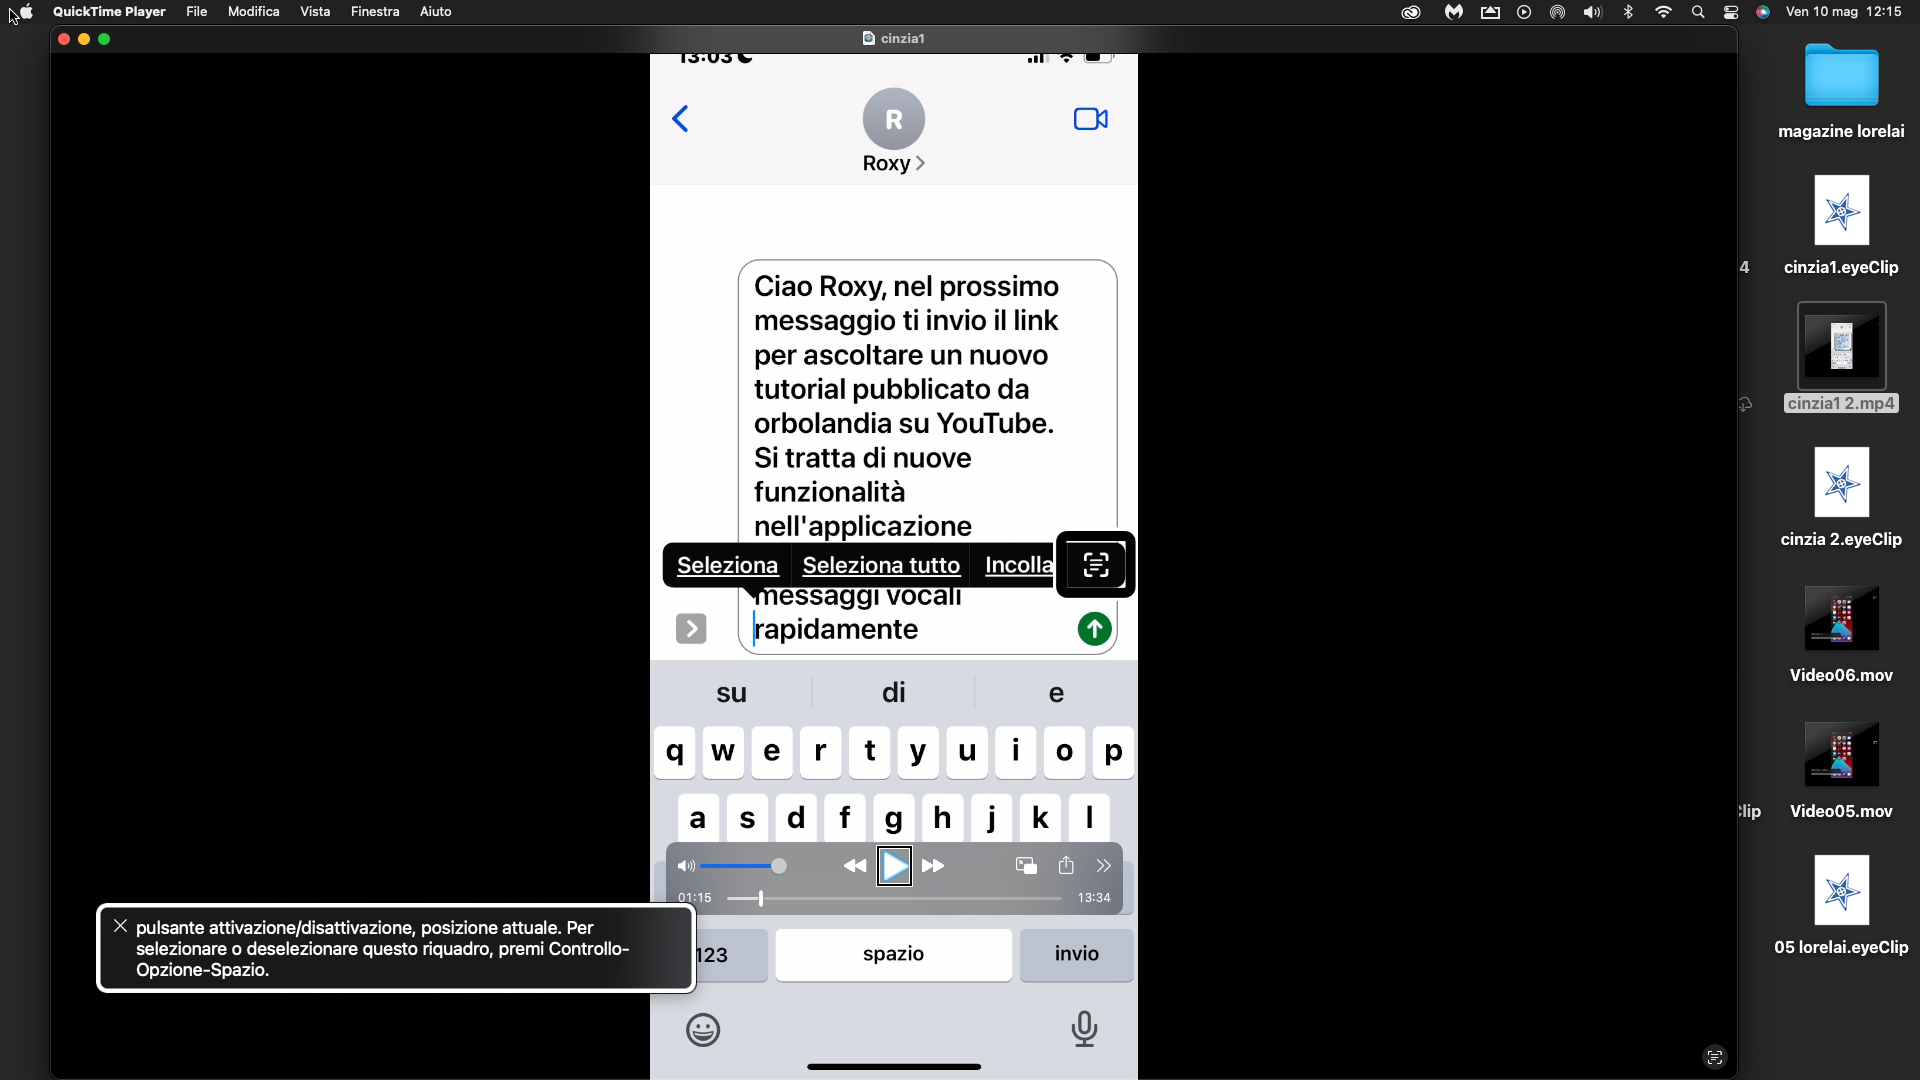 nell’immagine uno screenshot del Mac con sullo schermo un iPhone mentre Cinzia elabora il testo 